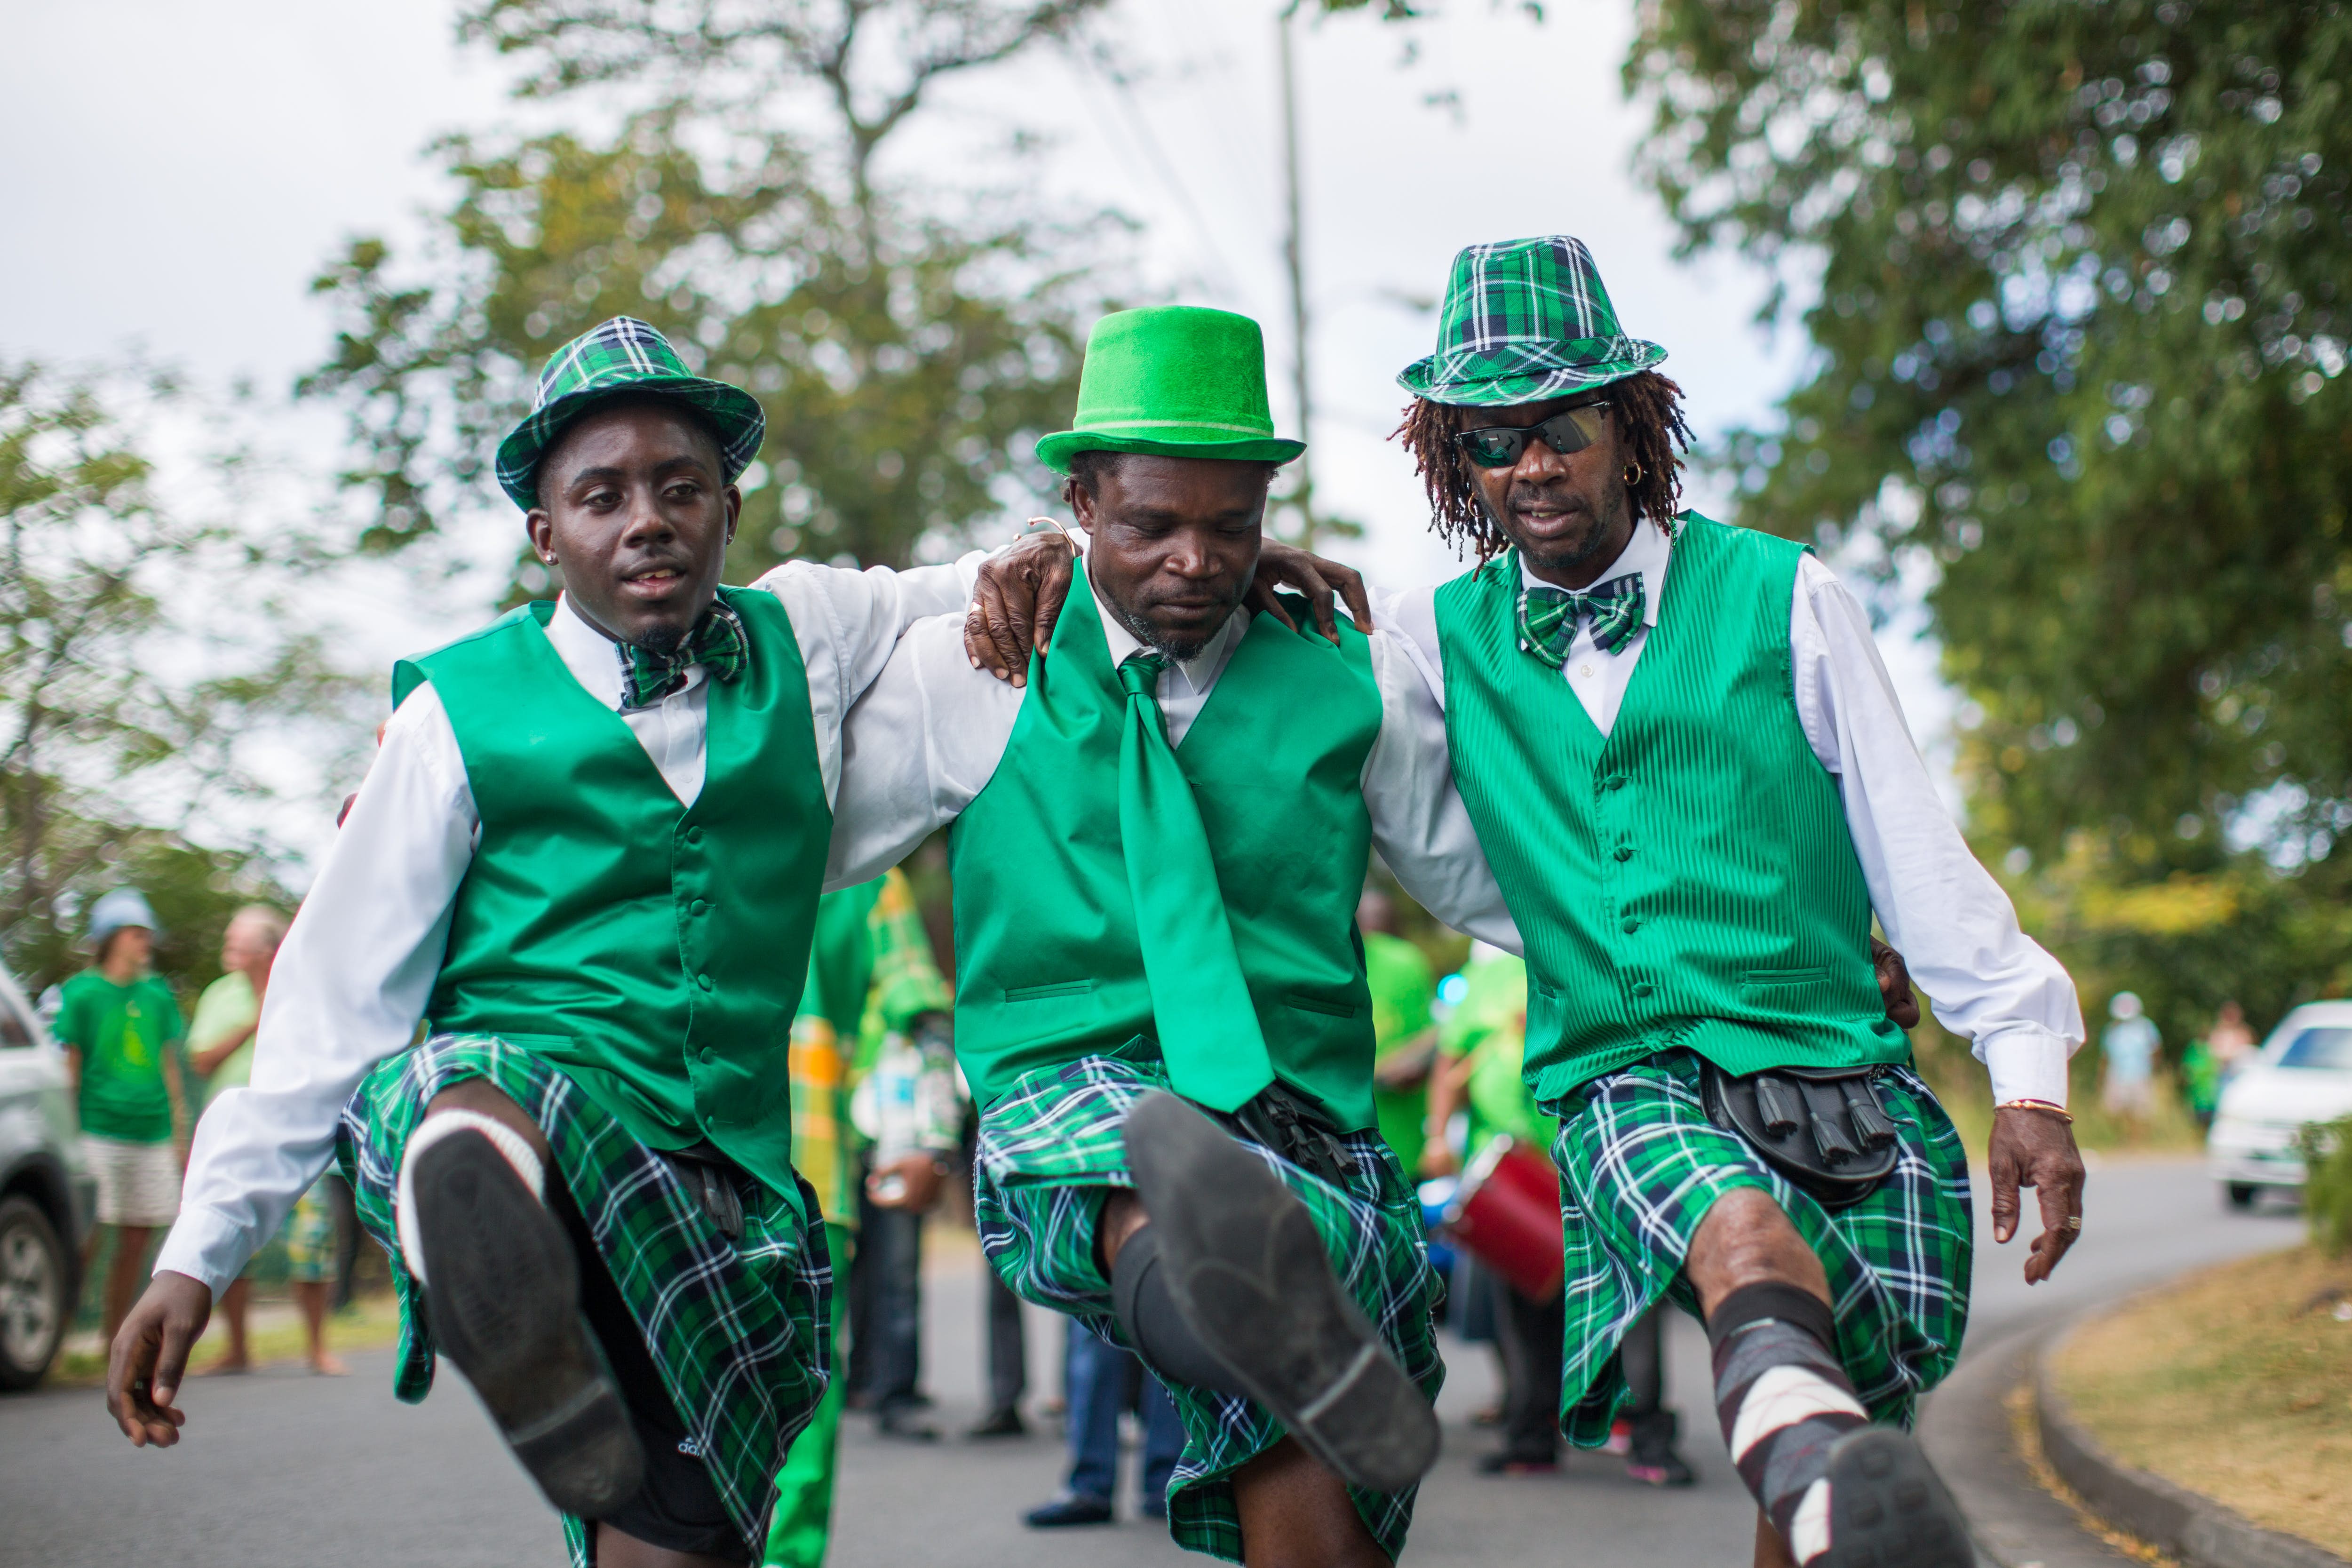 15 Facts About Montserrat St. Patrick's Day Festival